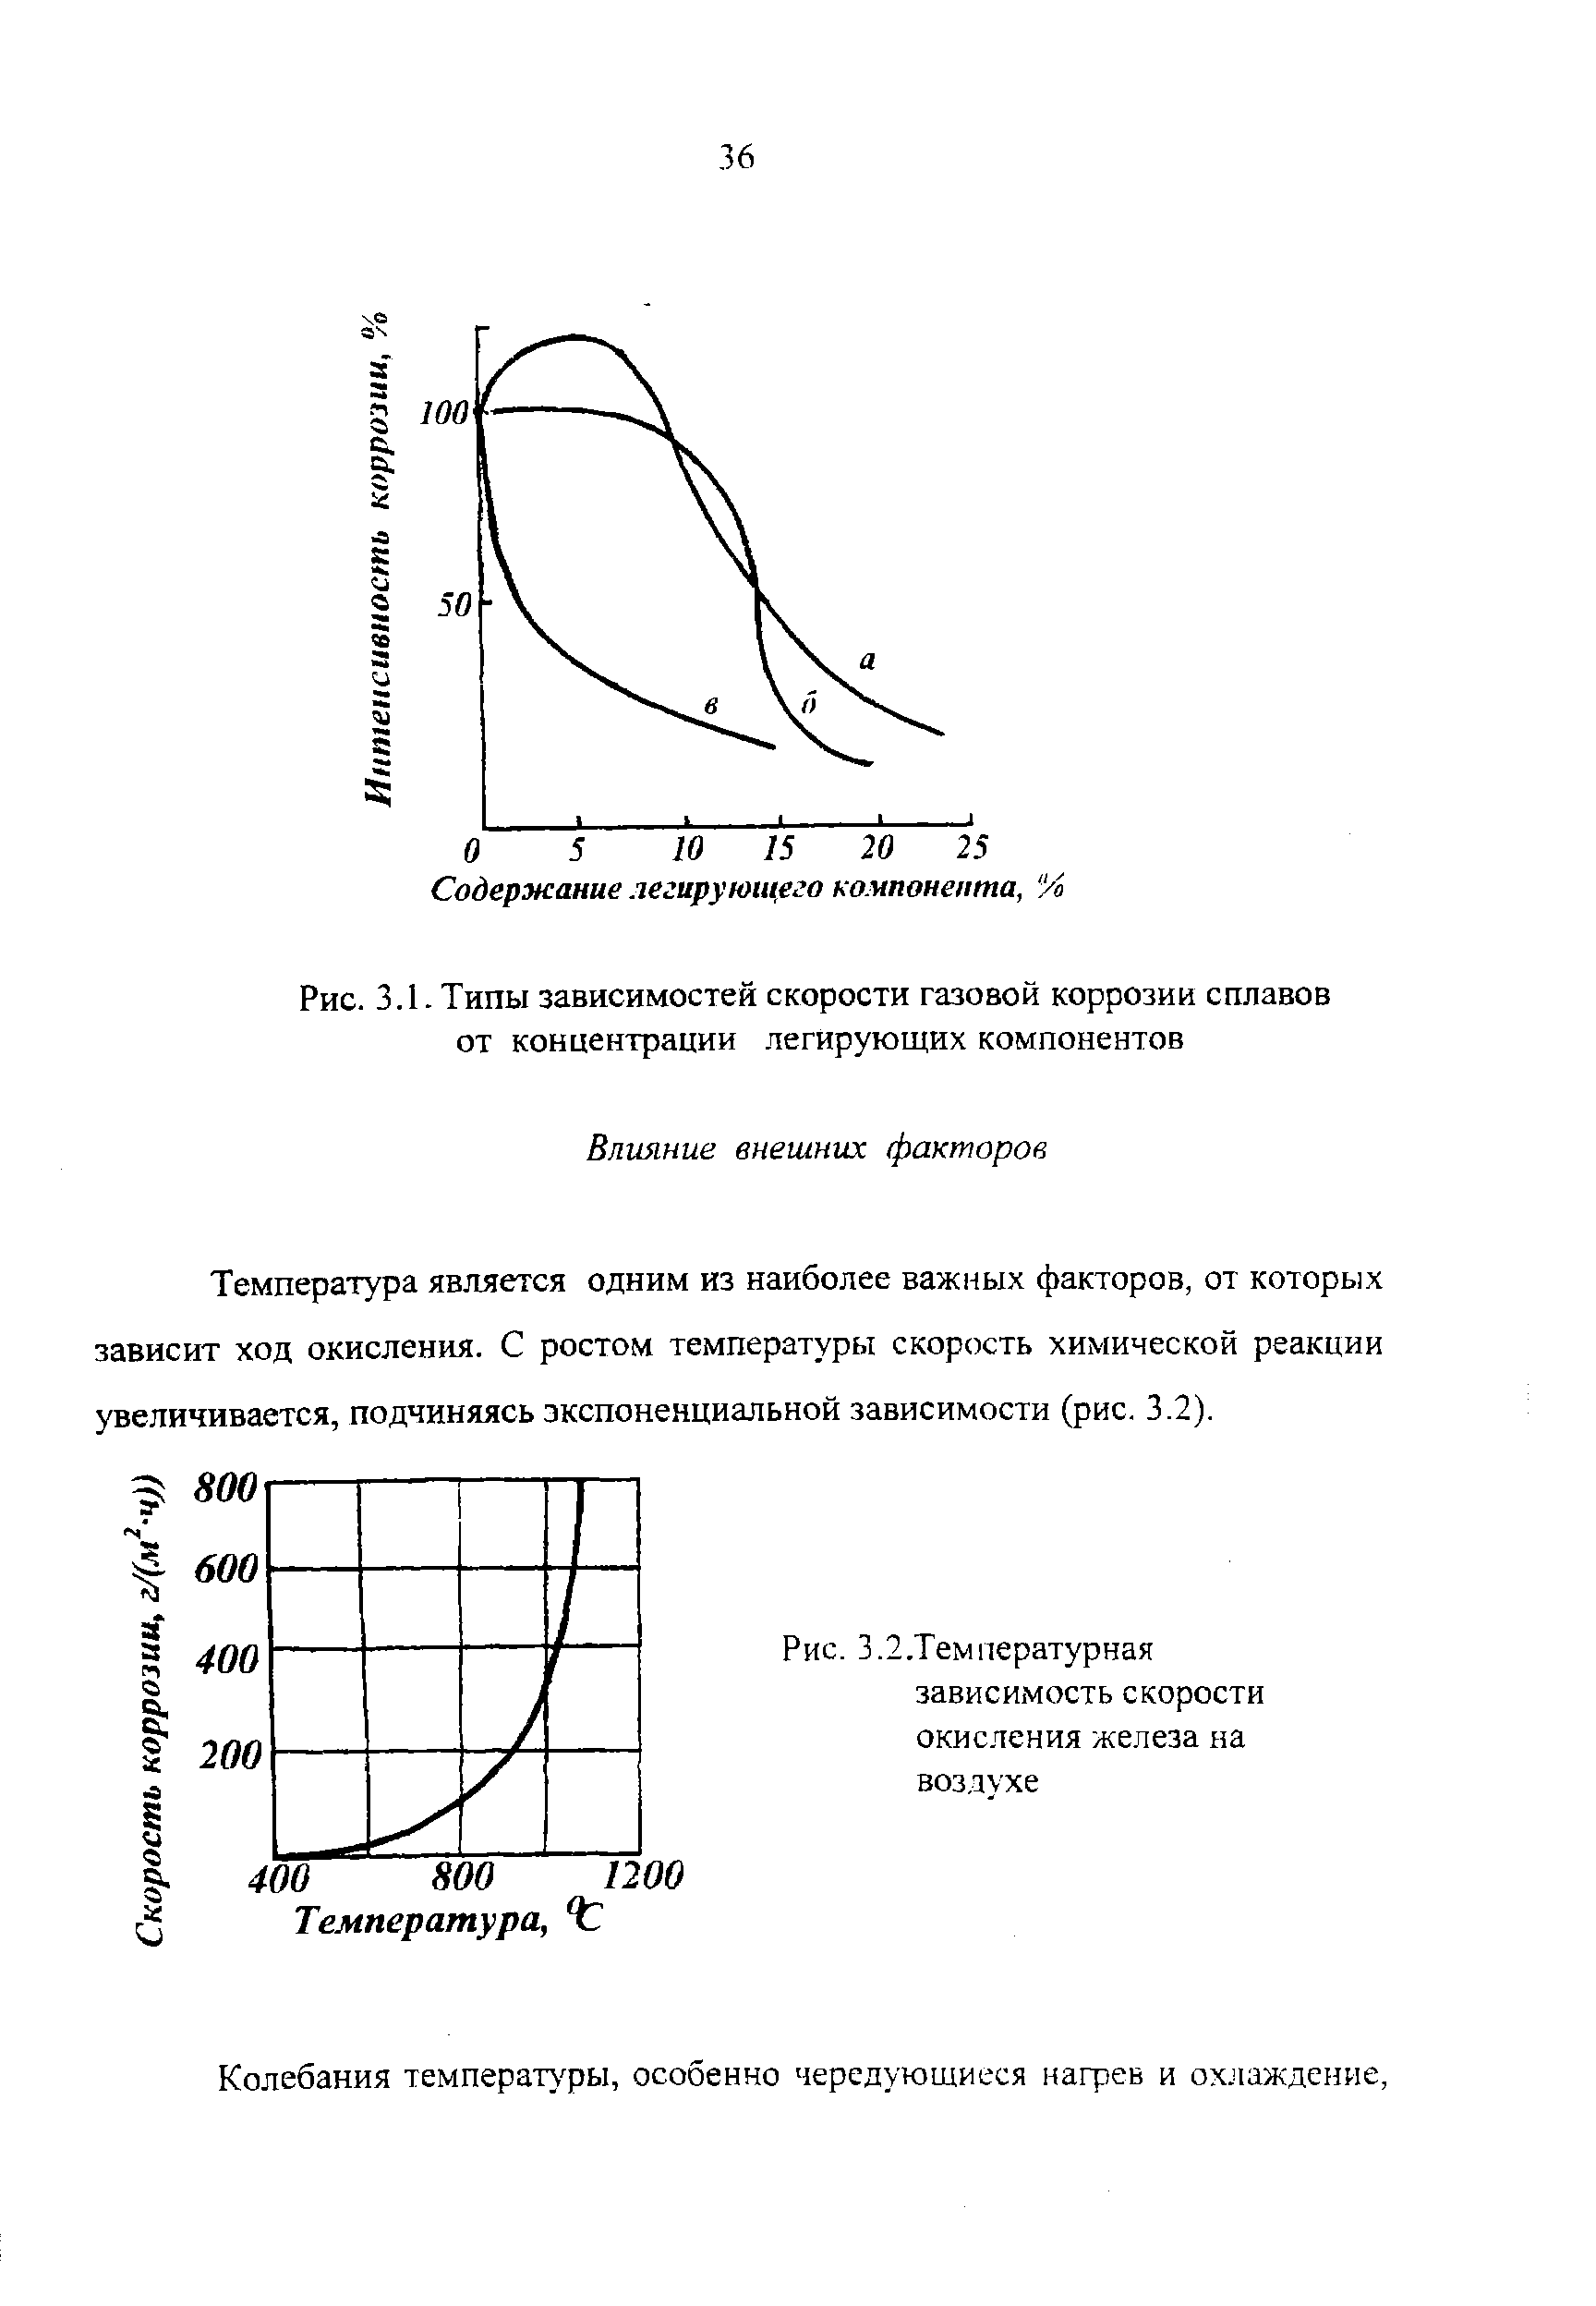 Рис. 3.1. Типы зависимостей скорости газовой коррозии сплавов от концентрации легирующих компонентов
